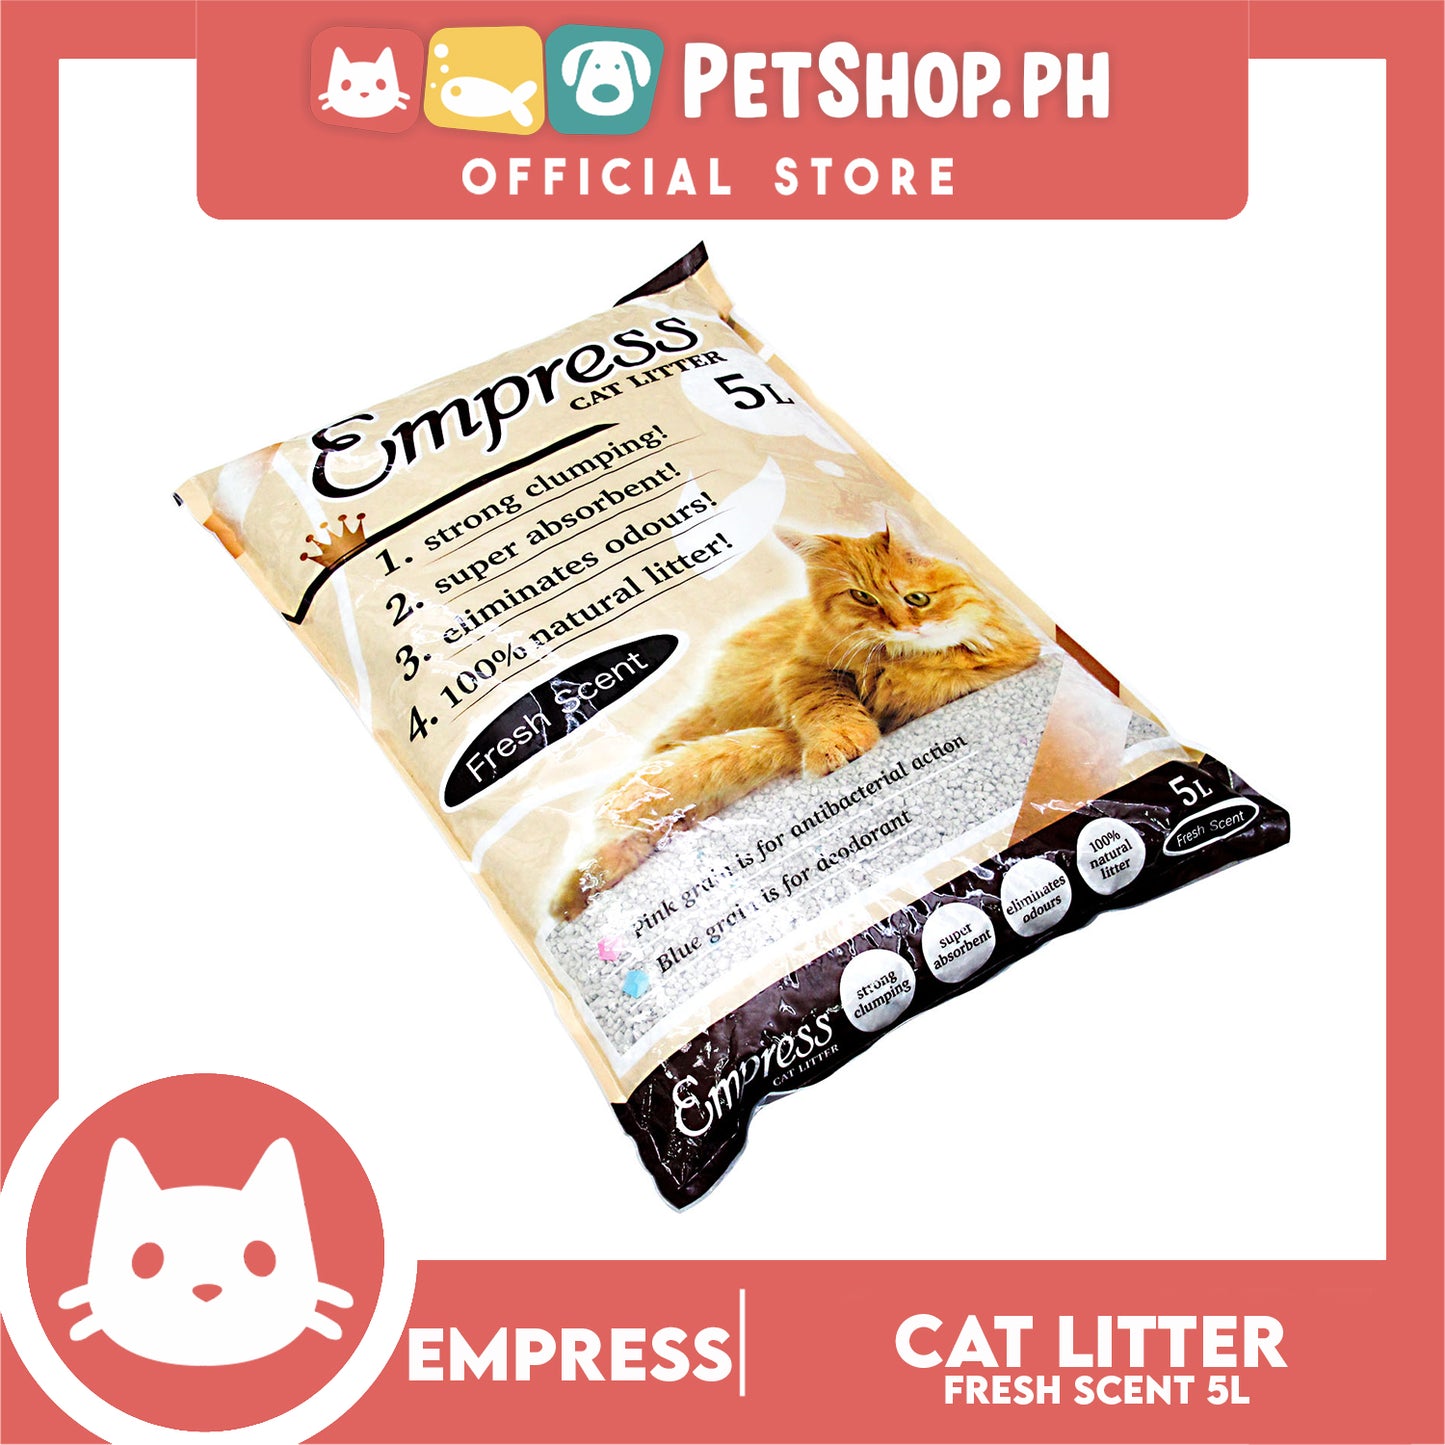 Empress Cat Litter